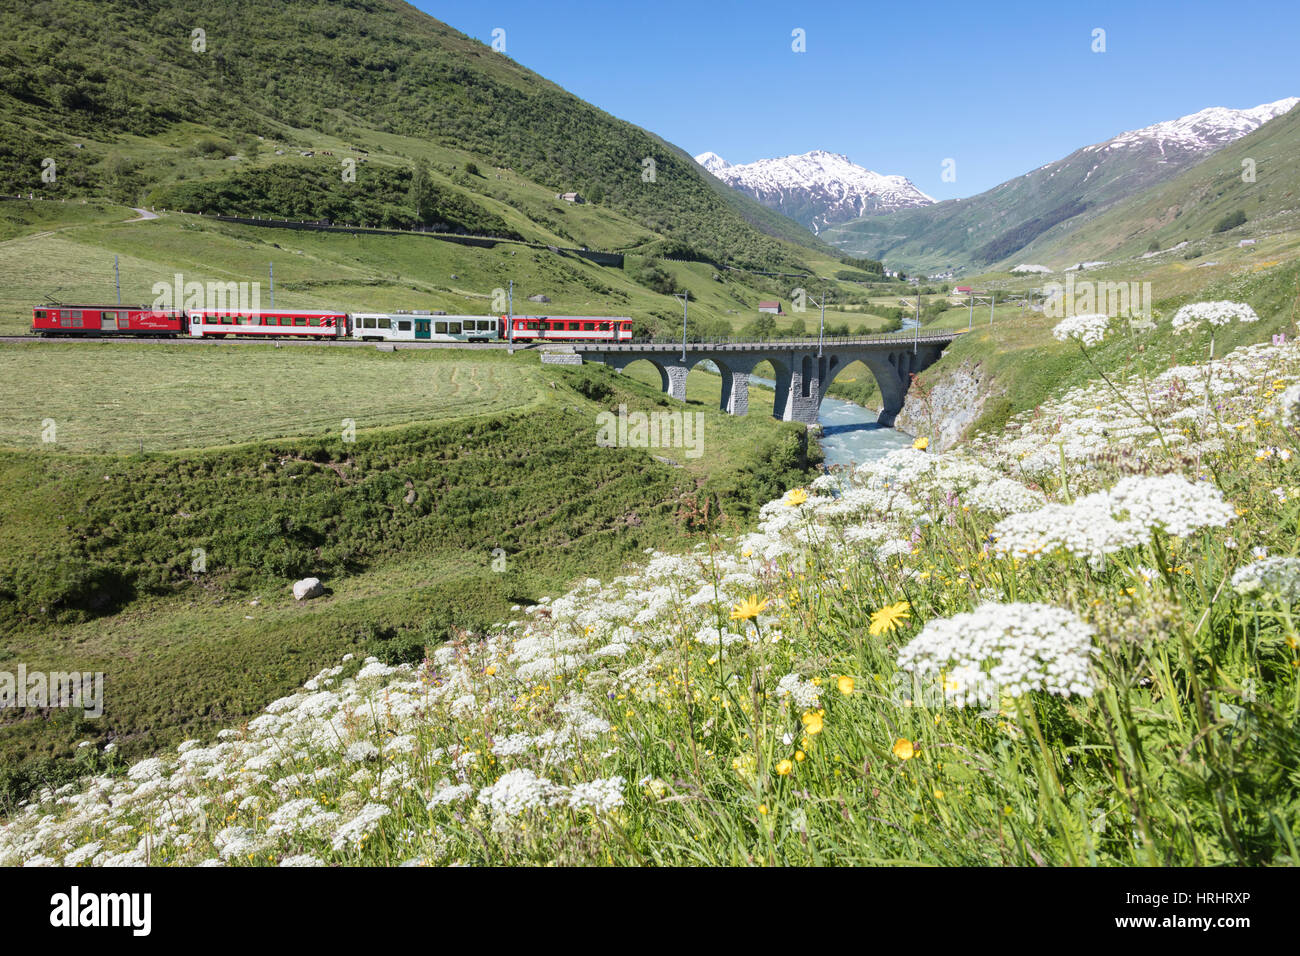 Typische rote Schweizer Schulen an Hospental Viadukt umgeben von Creek und blühenden Blumen, Andermatt, Kanton Uri, Schweiz Stockfoto